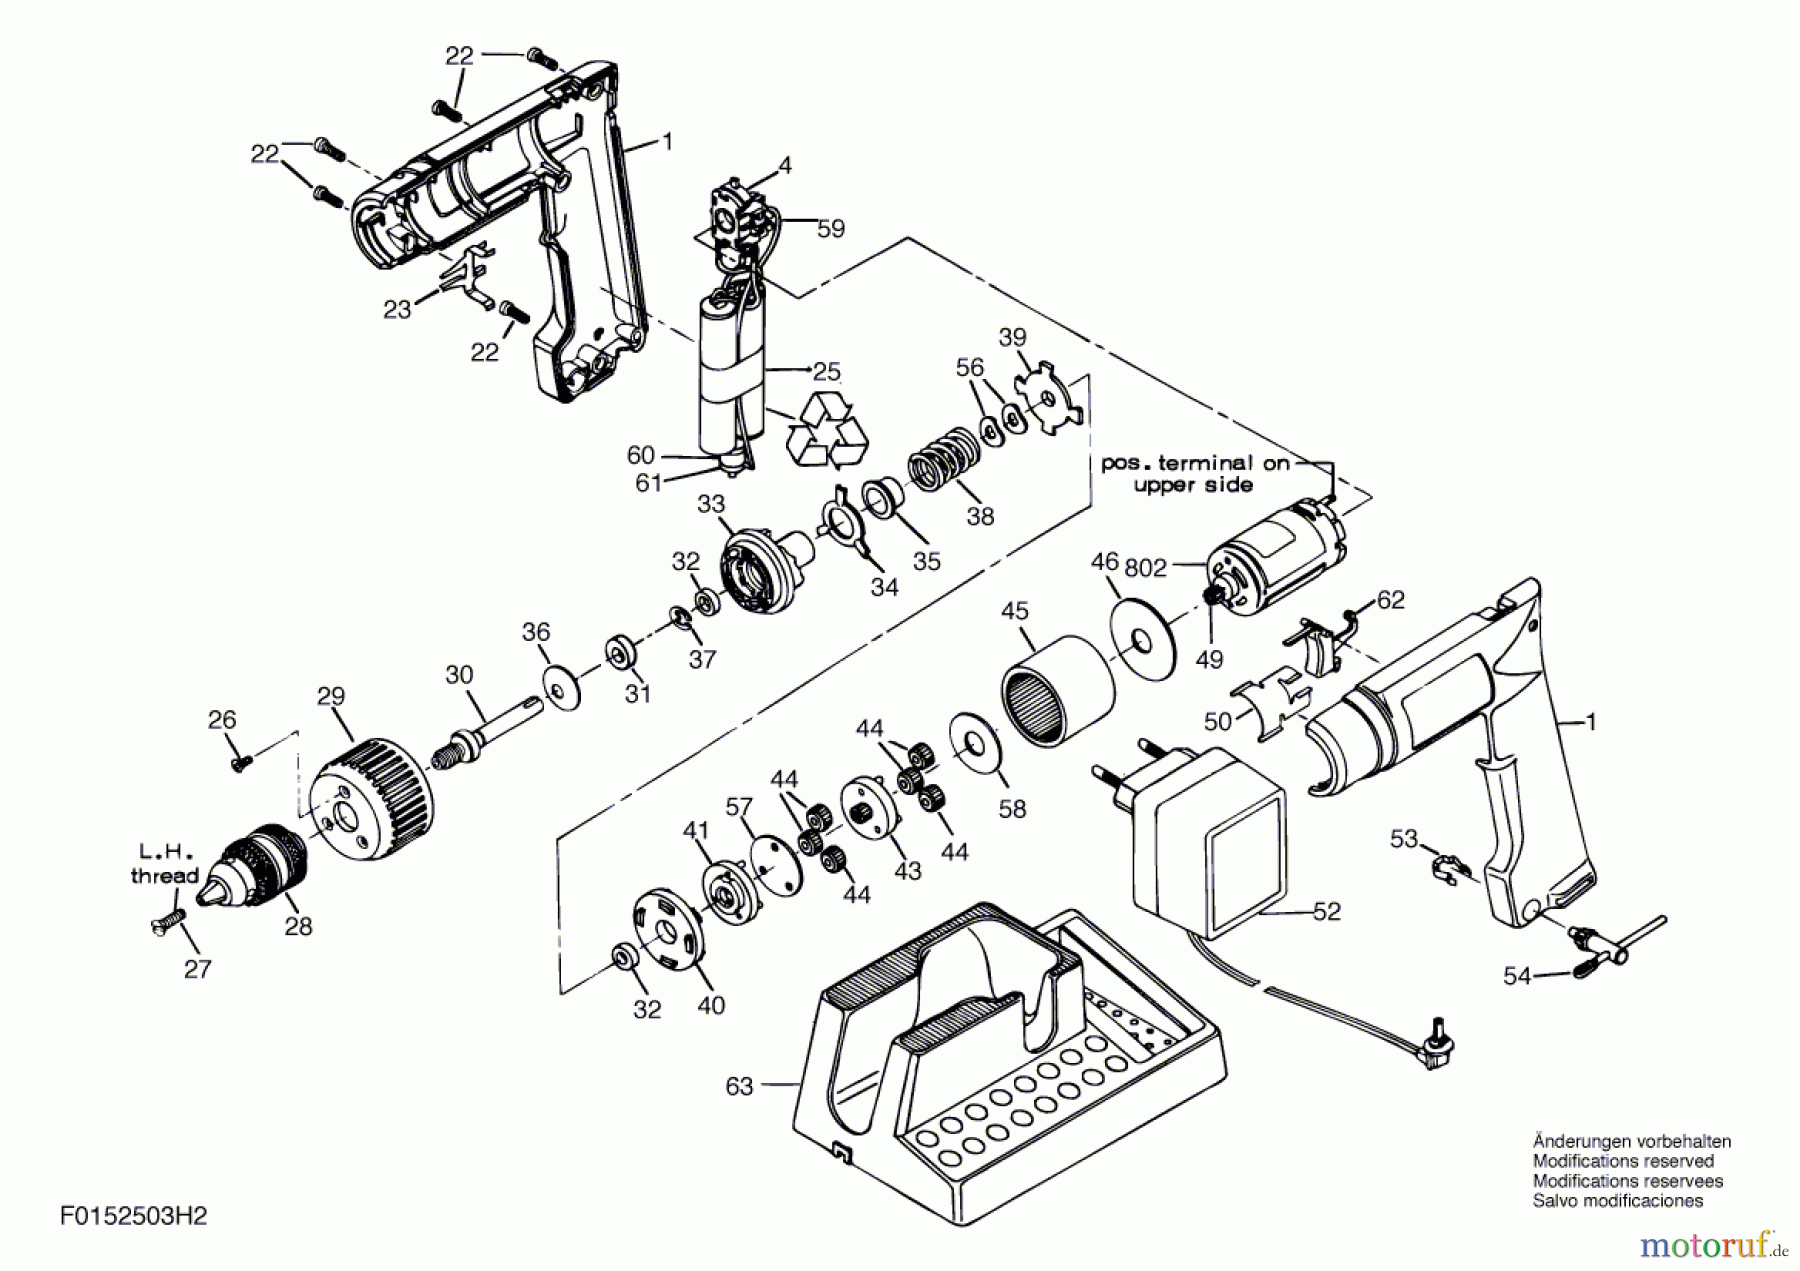  Bosch Akku Werkzeug Akku-Bohrmaschine 2503H2 Seite 1